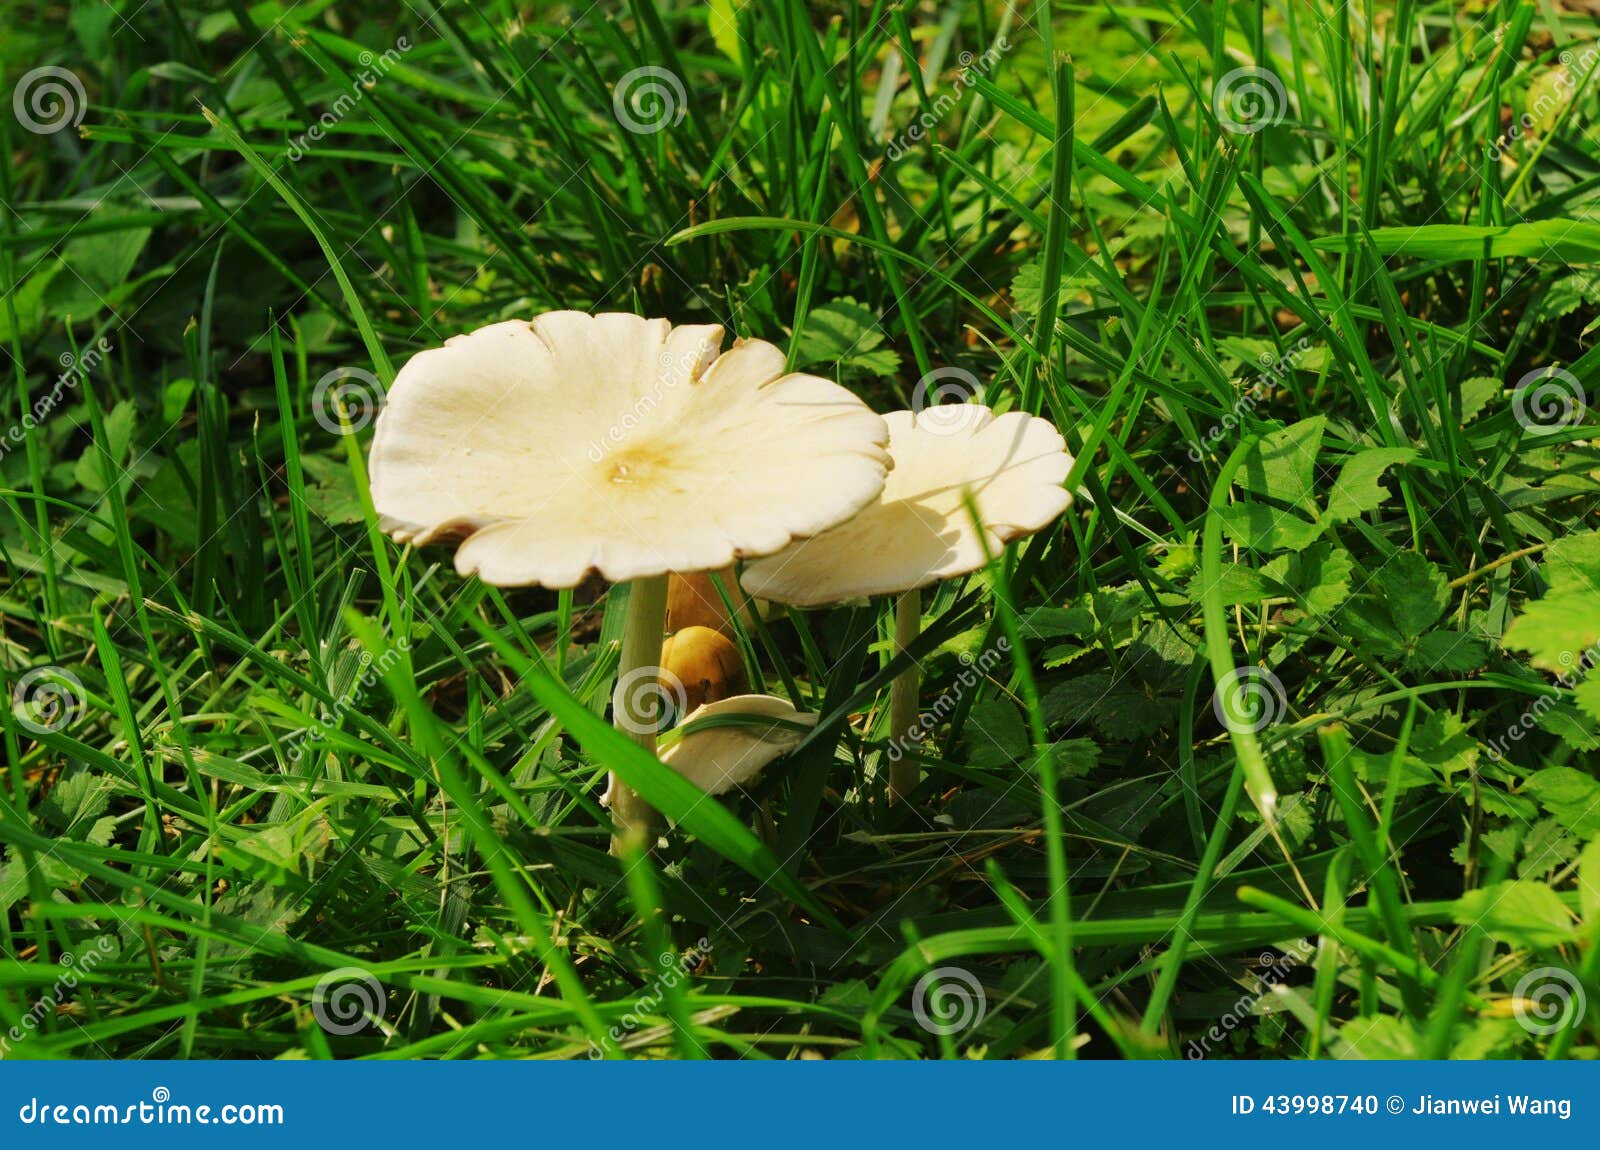 mushrooms